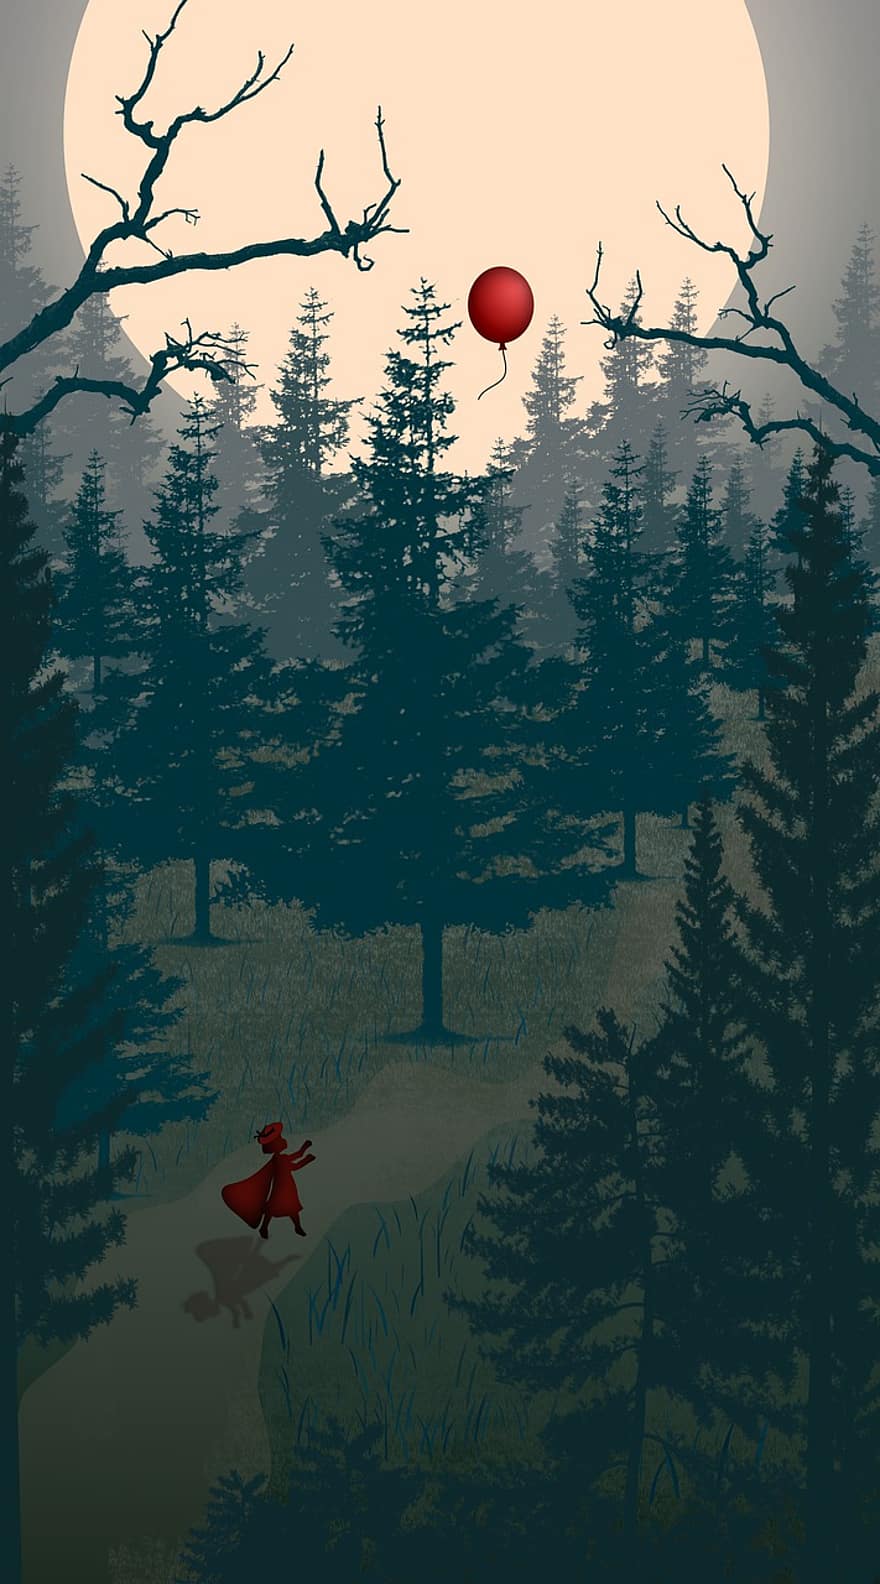 červená Karkulka, temný les, fantazie, měsíc, stromy, červený balónek, Příroda, ztracený, sama, noc, kreslená pohádka